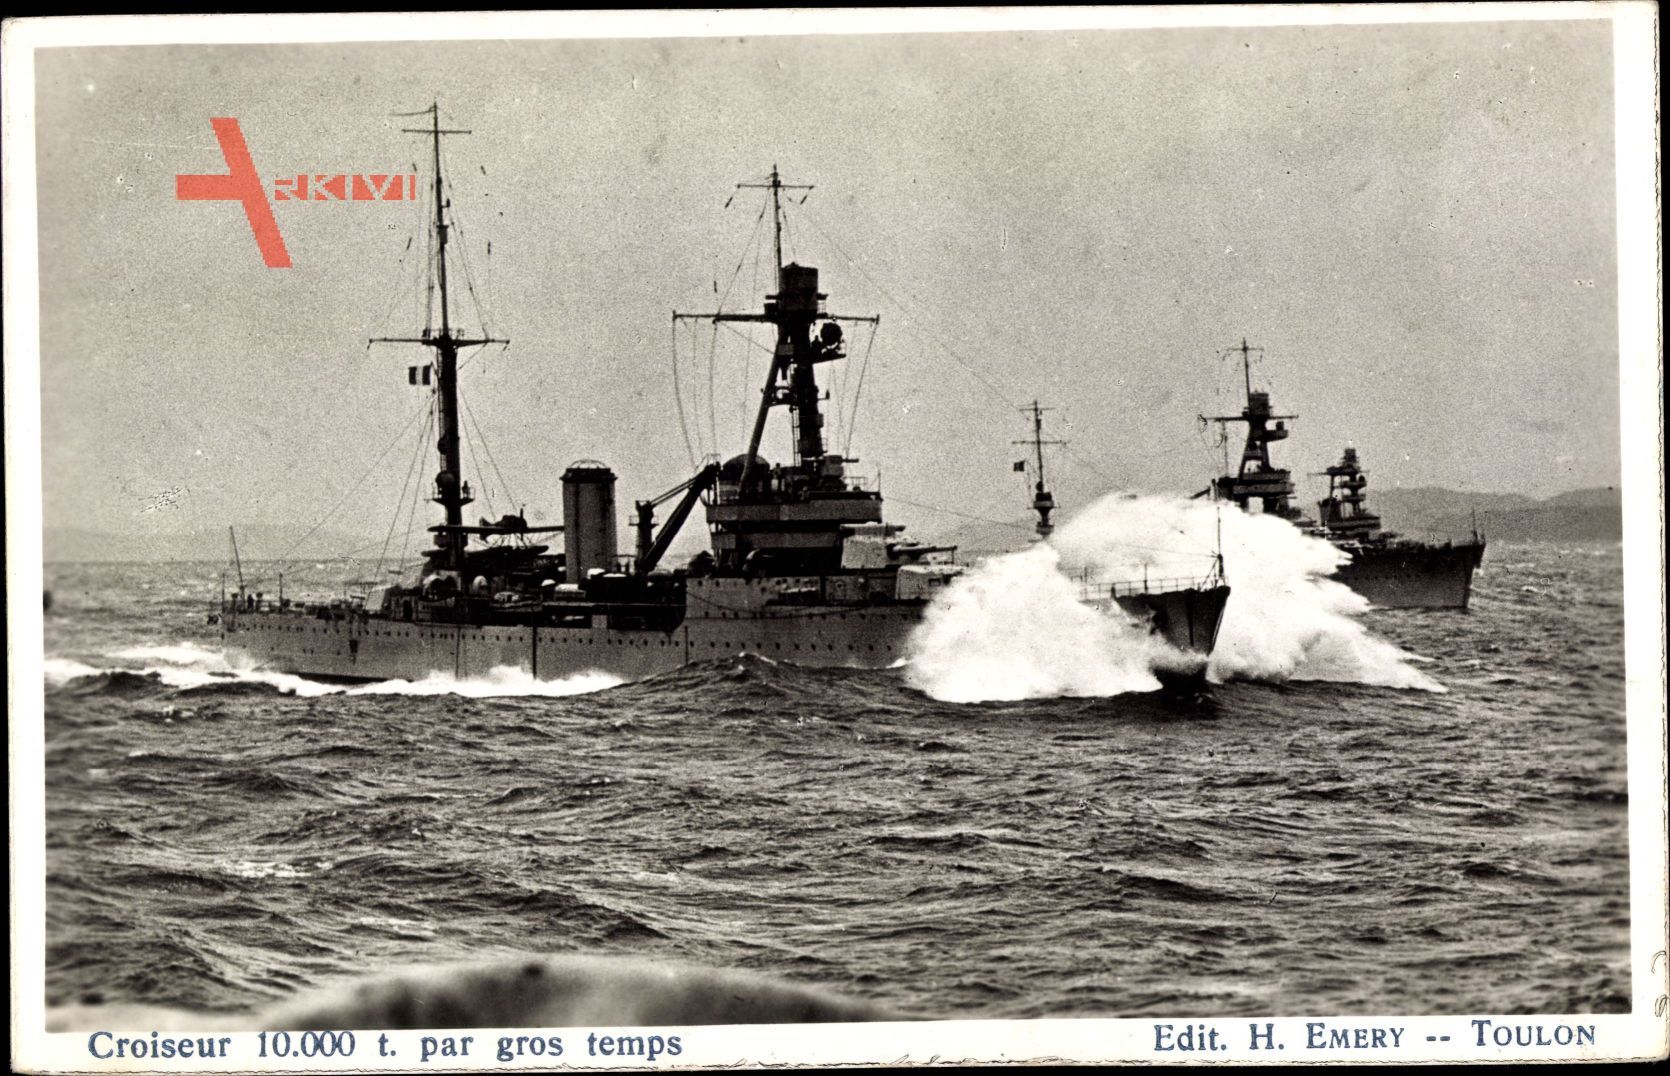 Französisches Kriegsschiff, Croiseur, Kreuzer in Fahrt